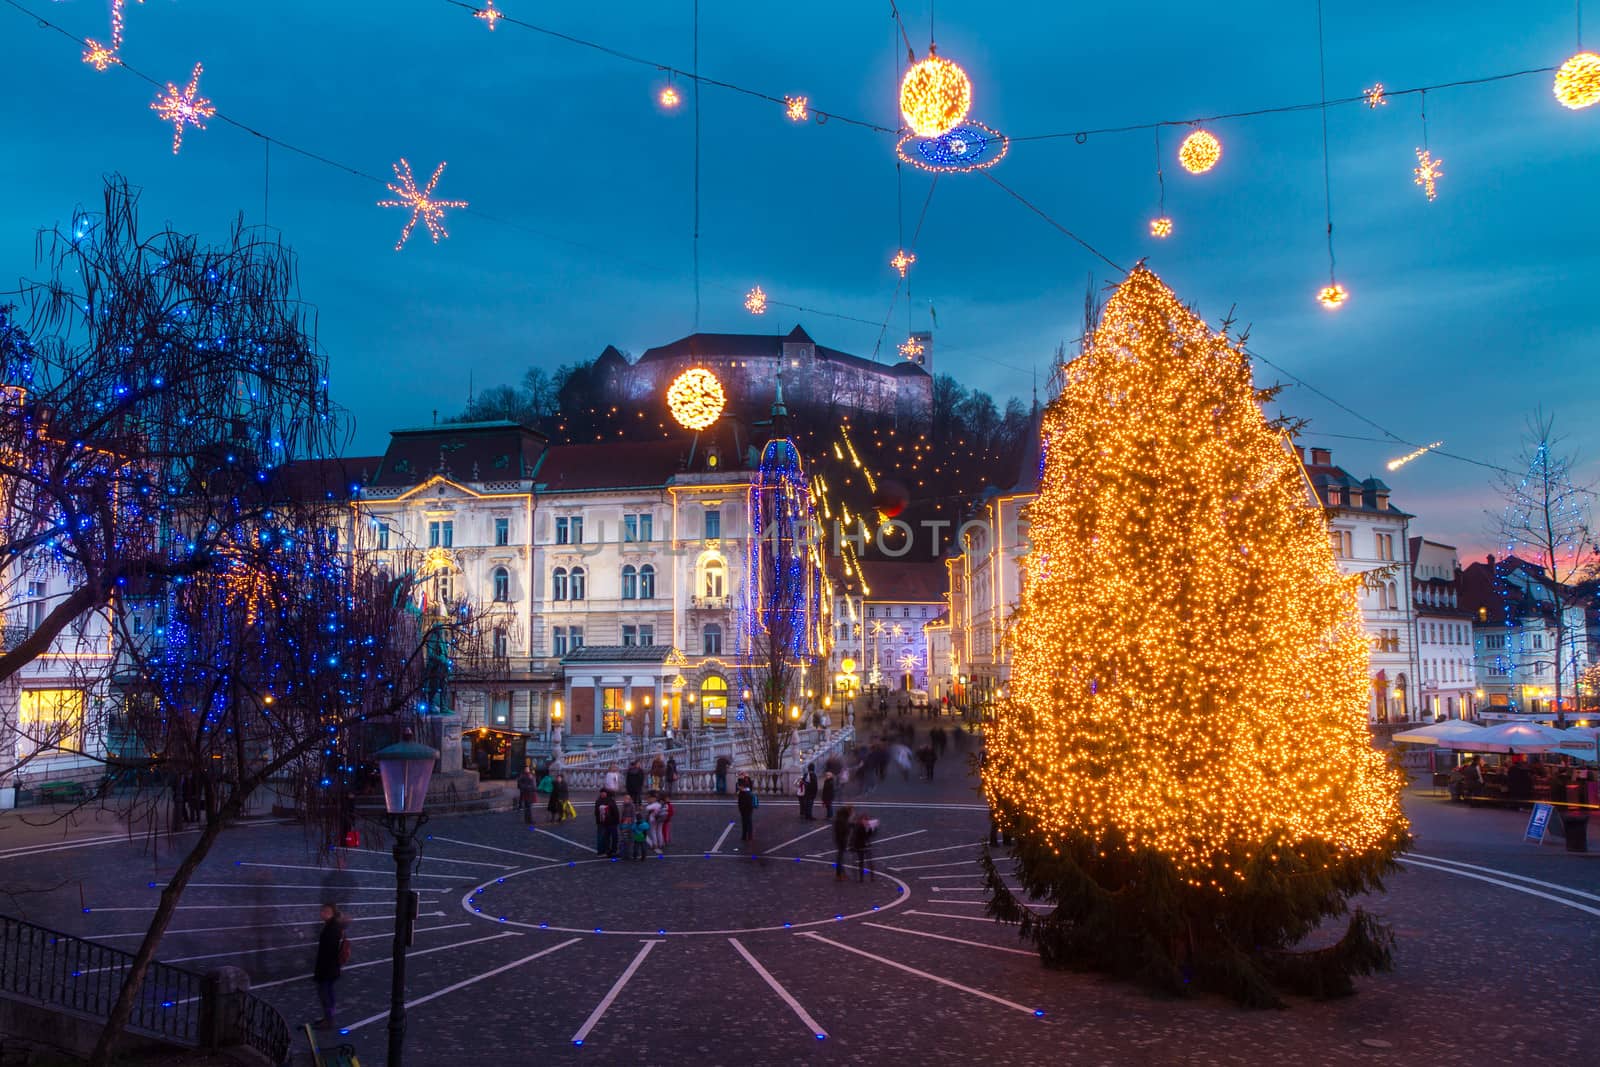 Preseren's square, Ljubljana, Slovenia, Europe. by kasto